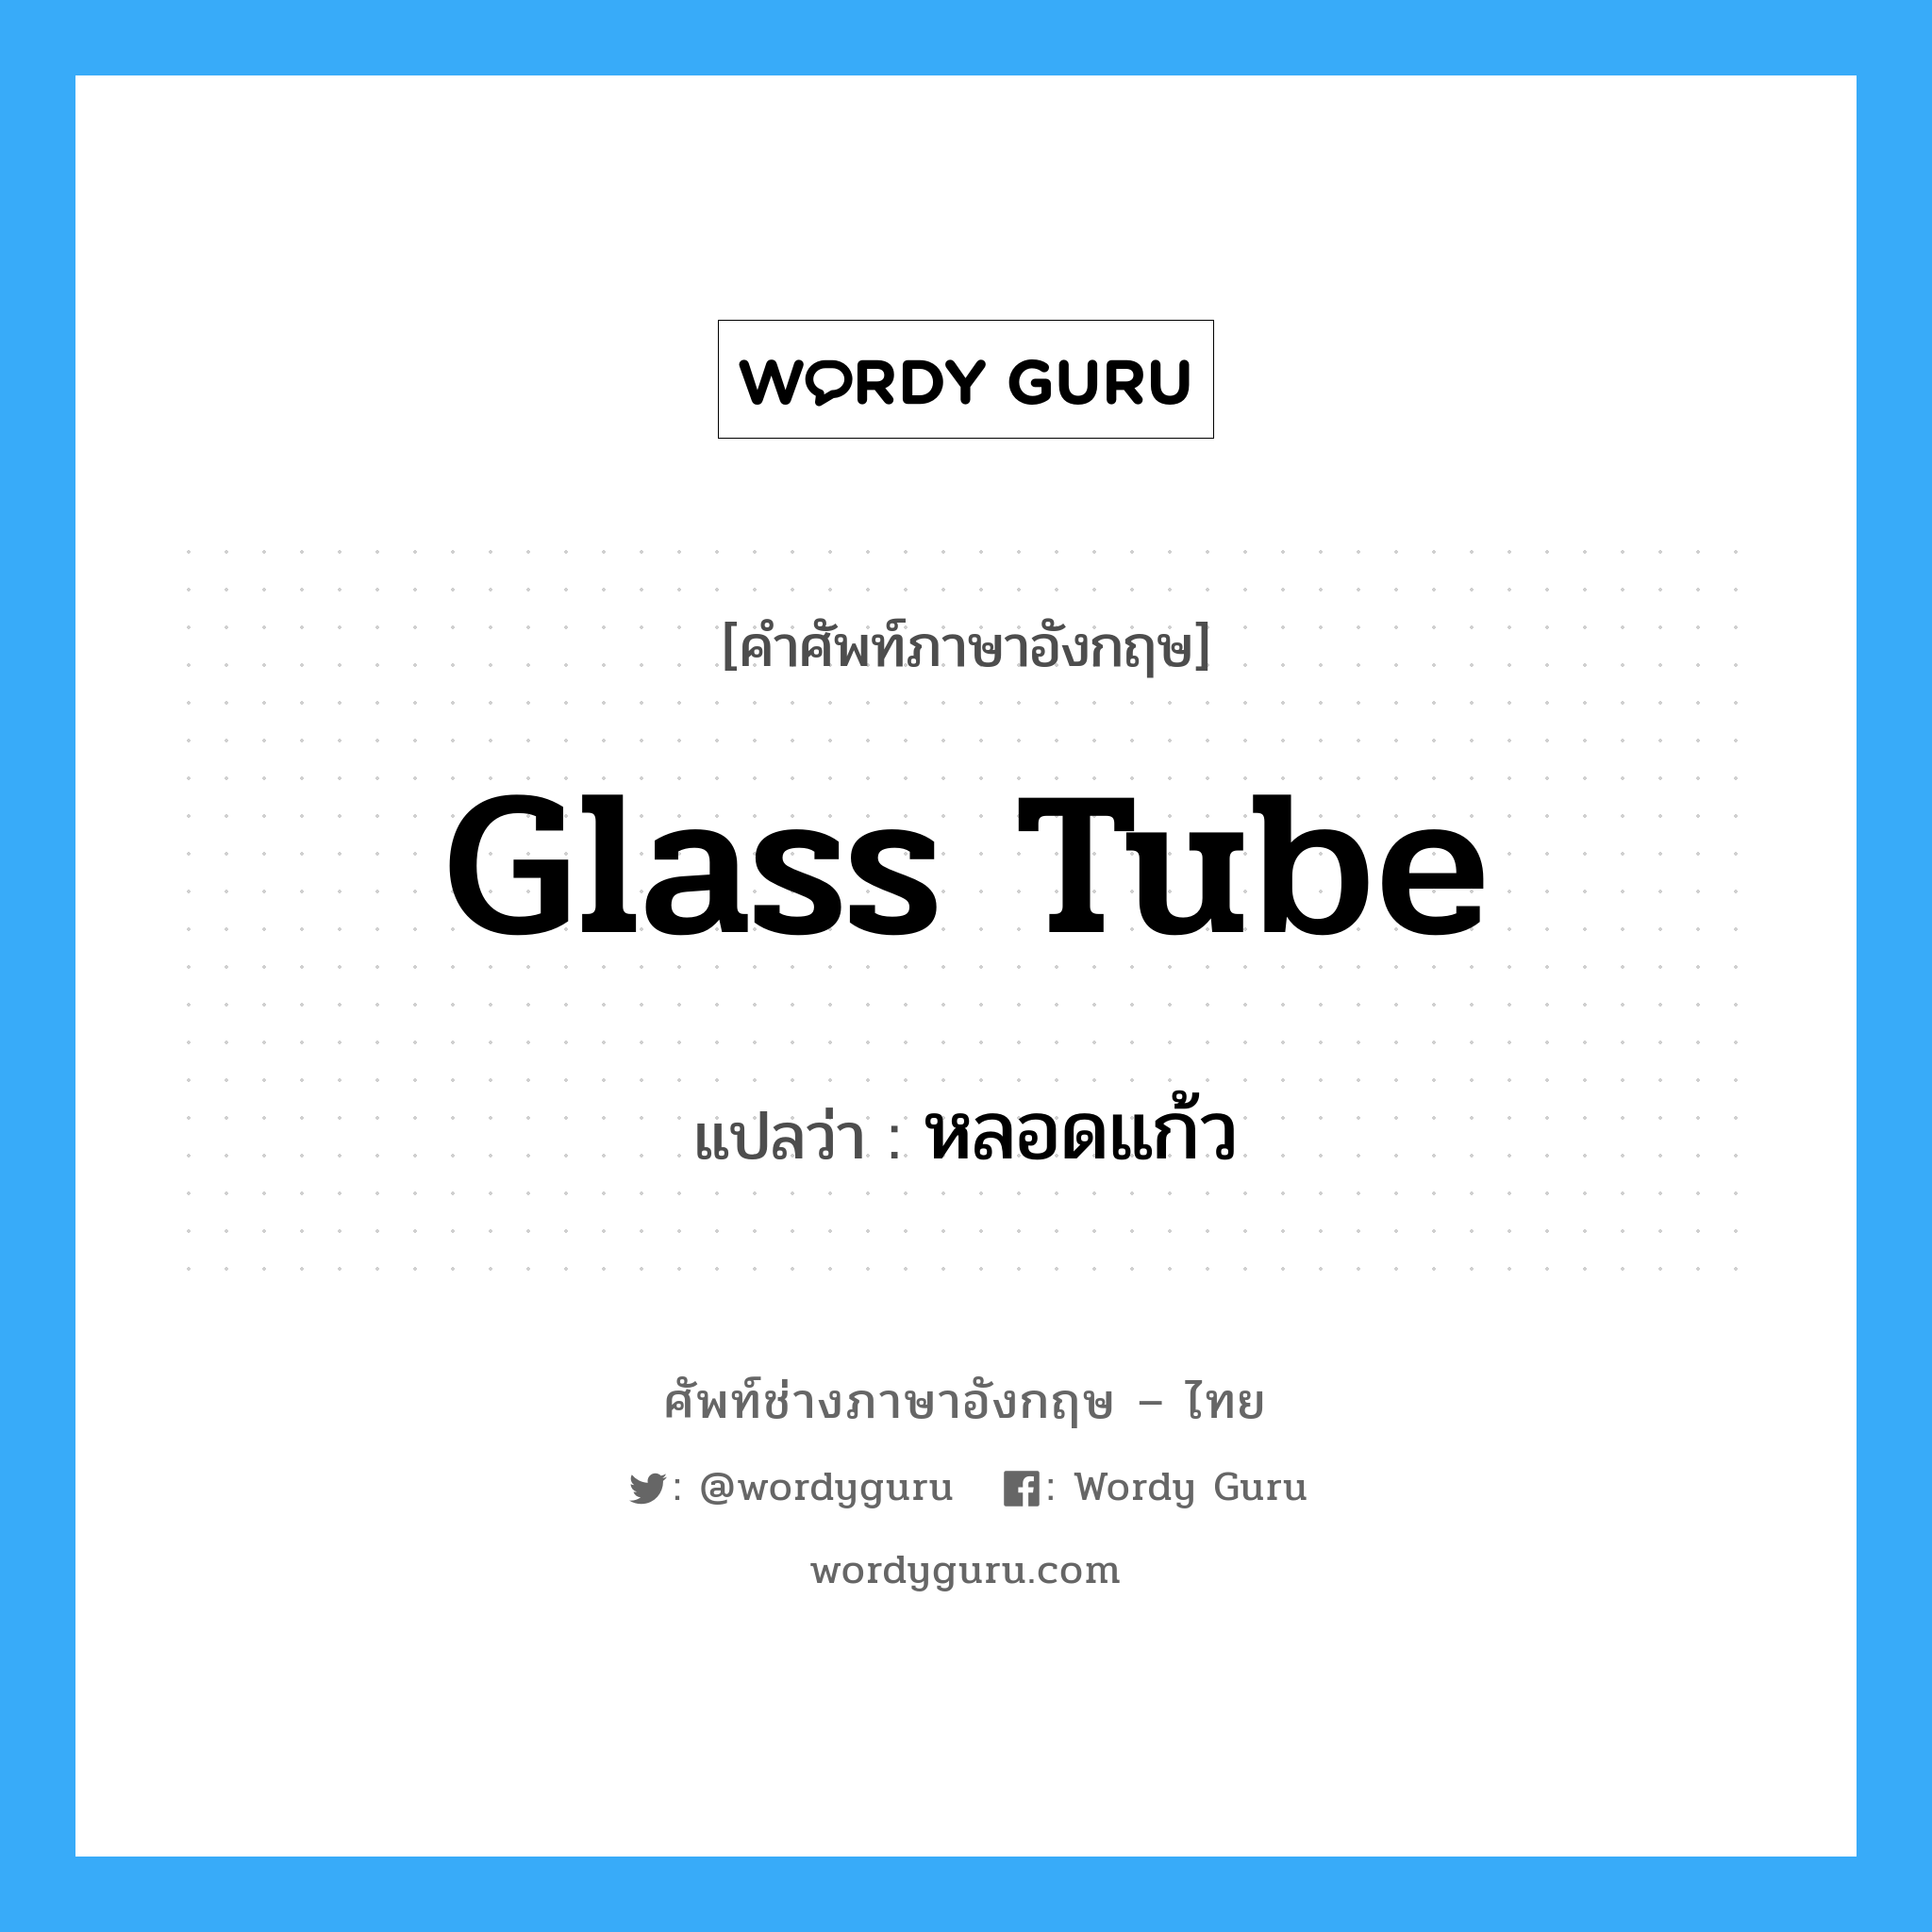 glass tube แปลว่า?, คำศัพท์ช่างภาษาอังกฤษ - ไทย glass tube คำศัพท์ภาษาอังกฤษ glass tube แปลว่า หลอดแก้ว